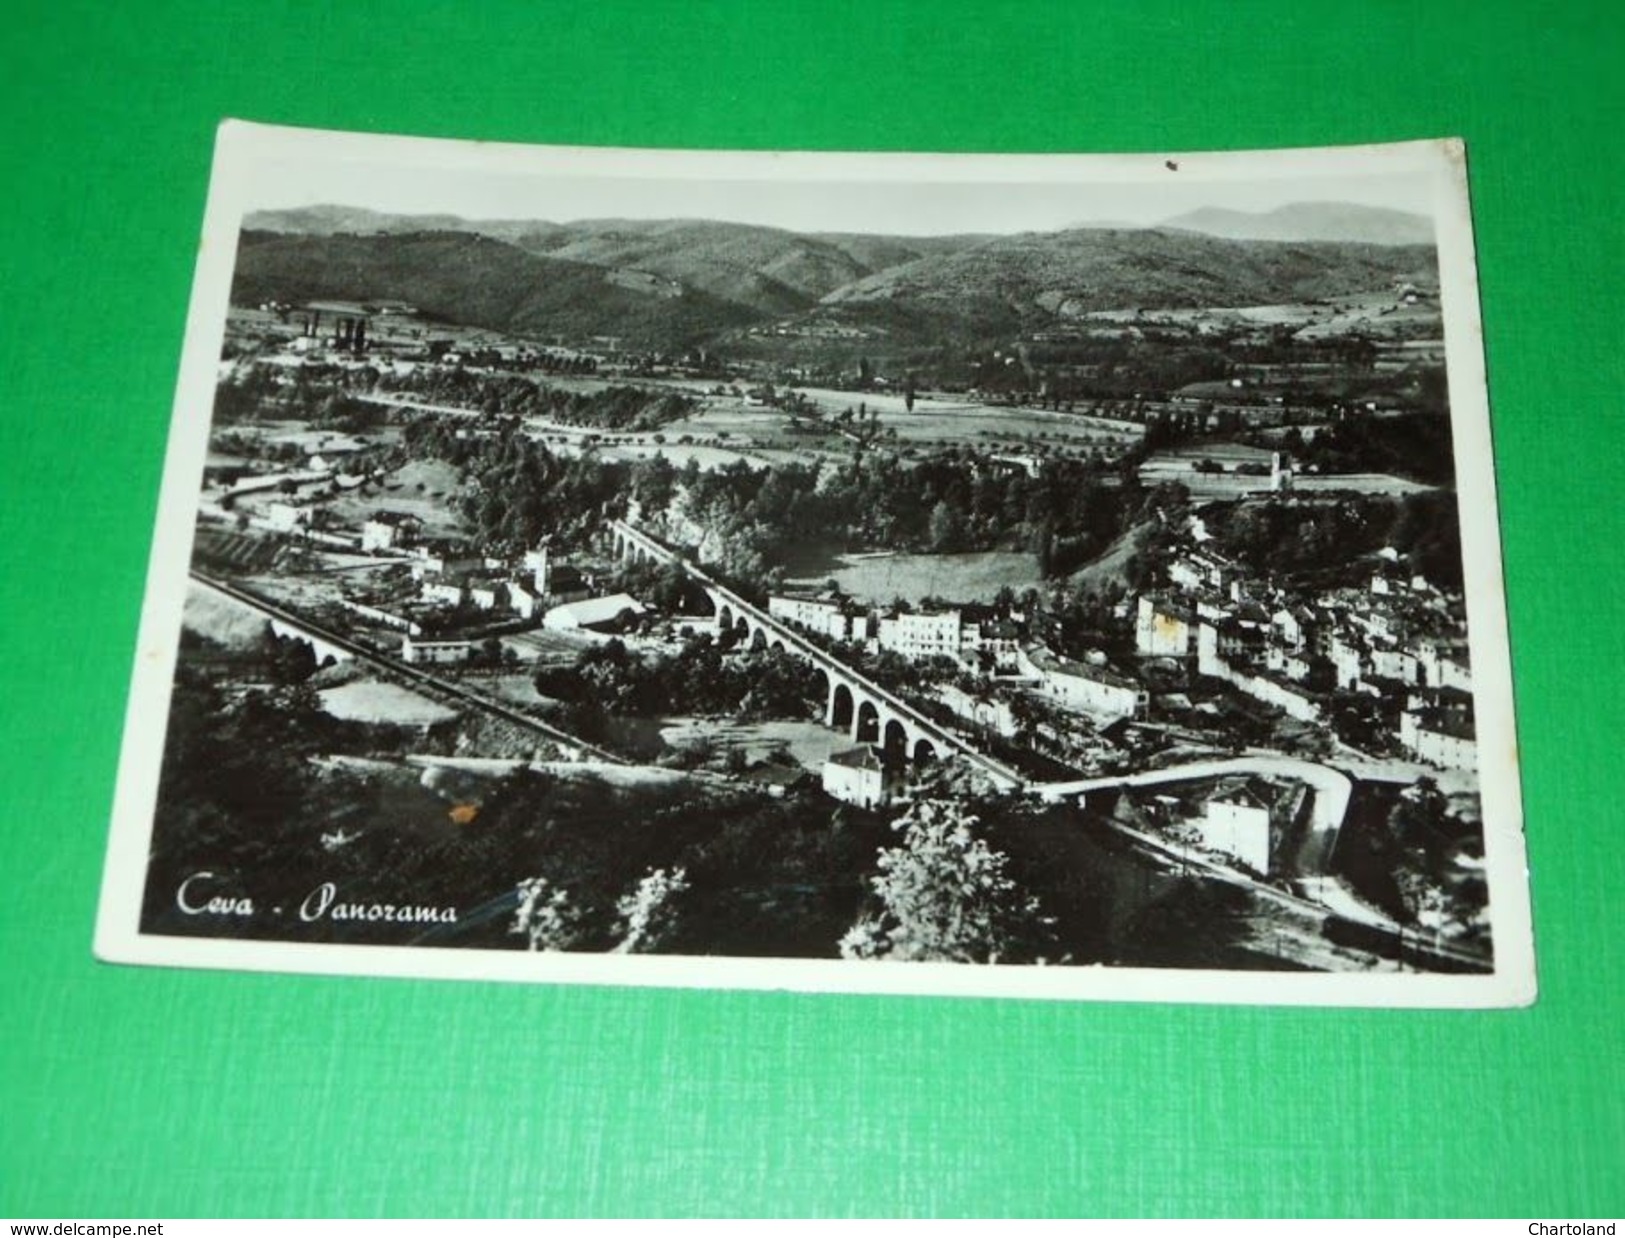 Cartolina Ceva ( Cuneo ) - Panorama 1955 - Cuneo